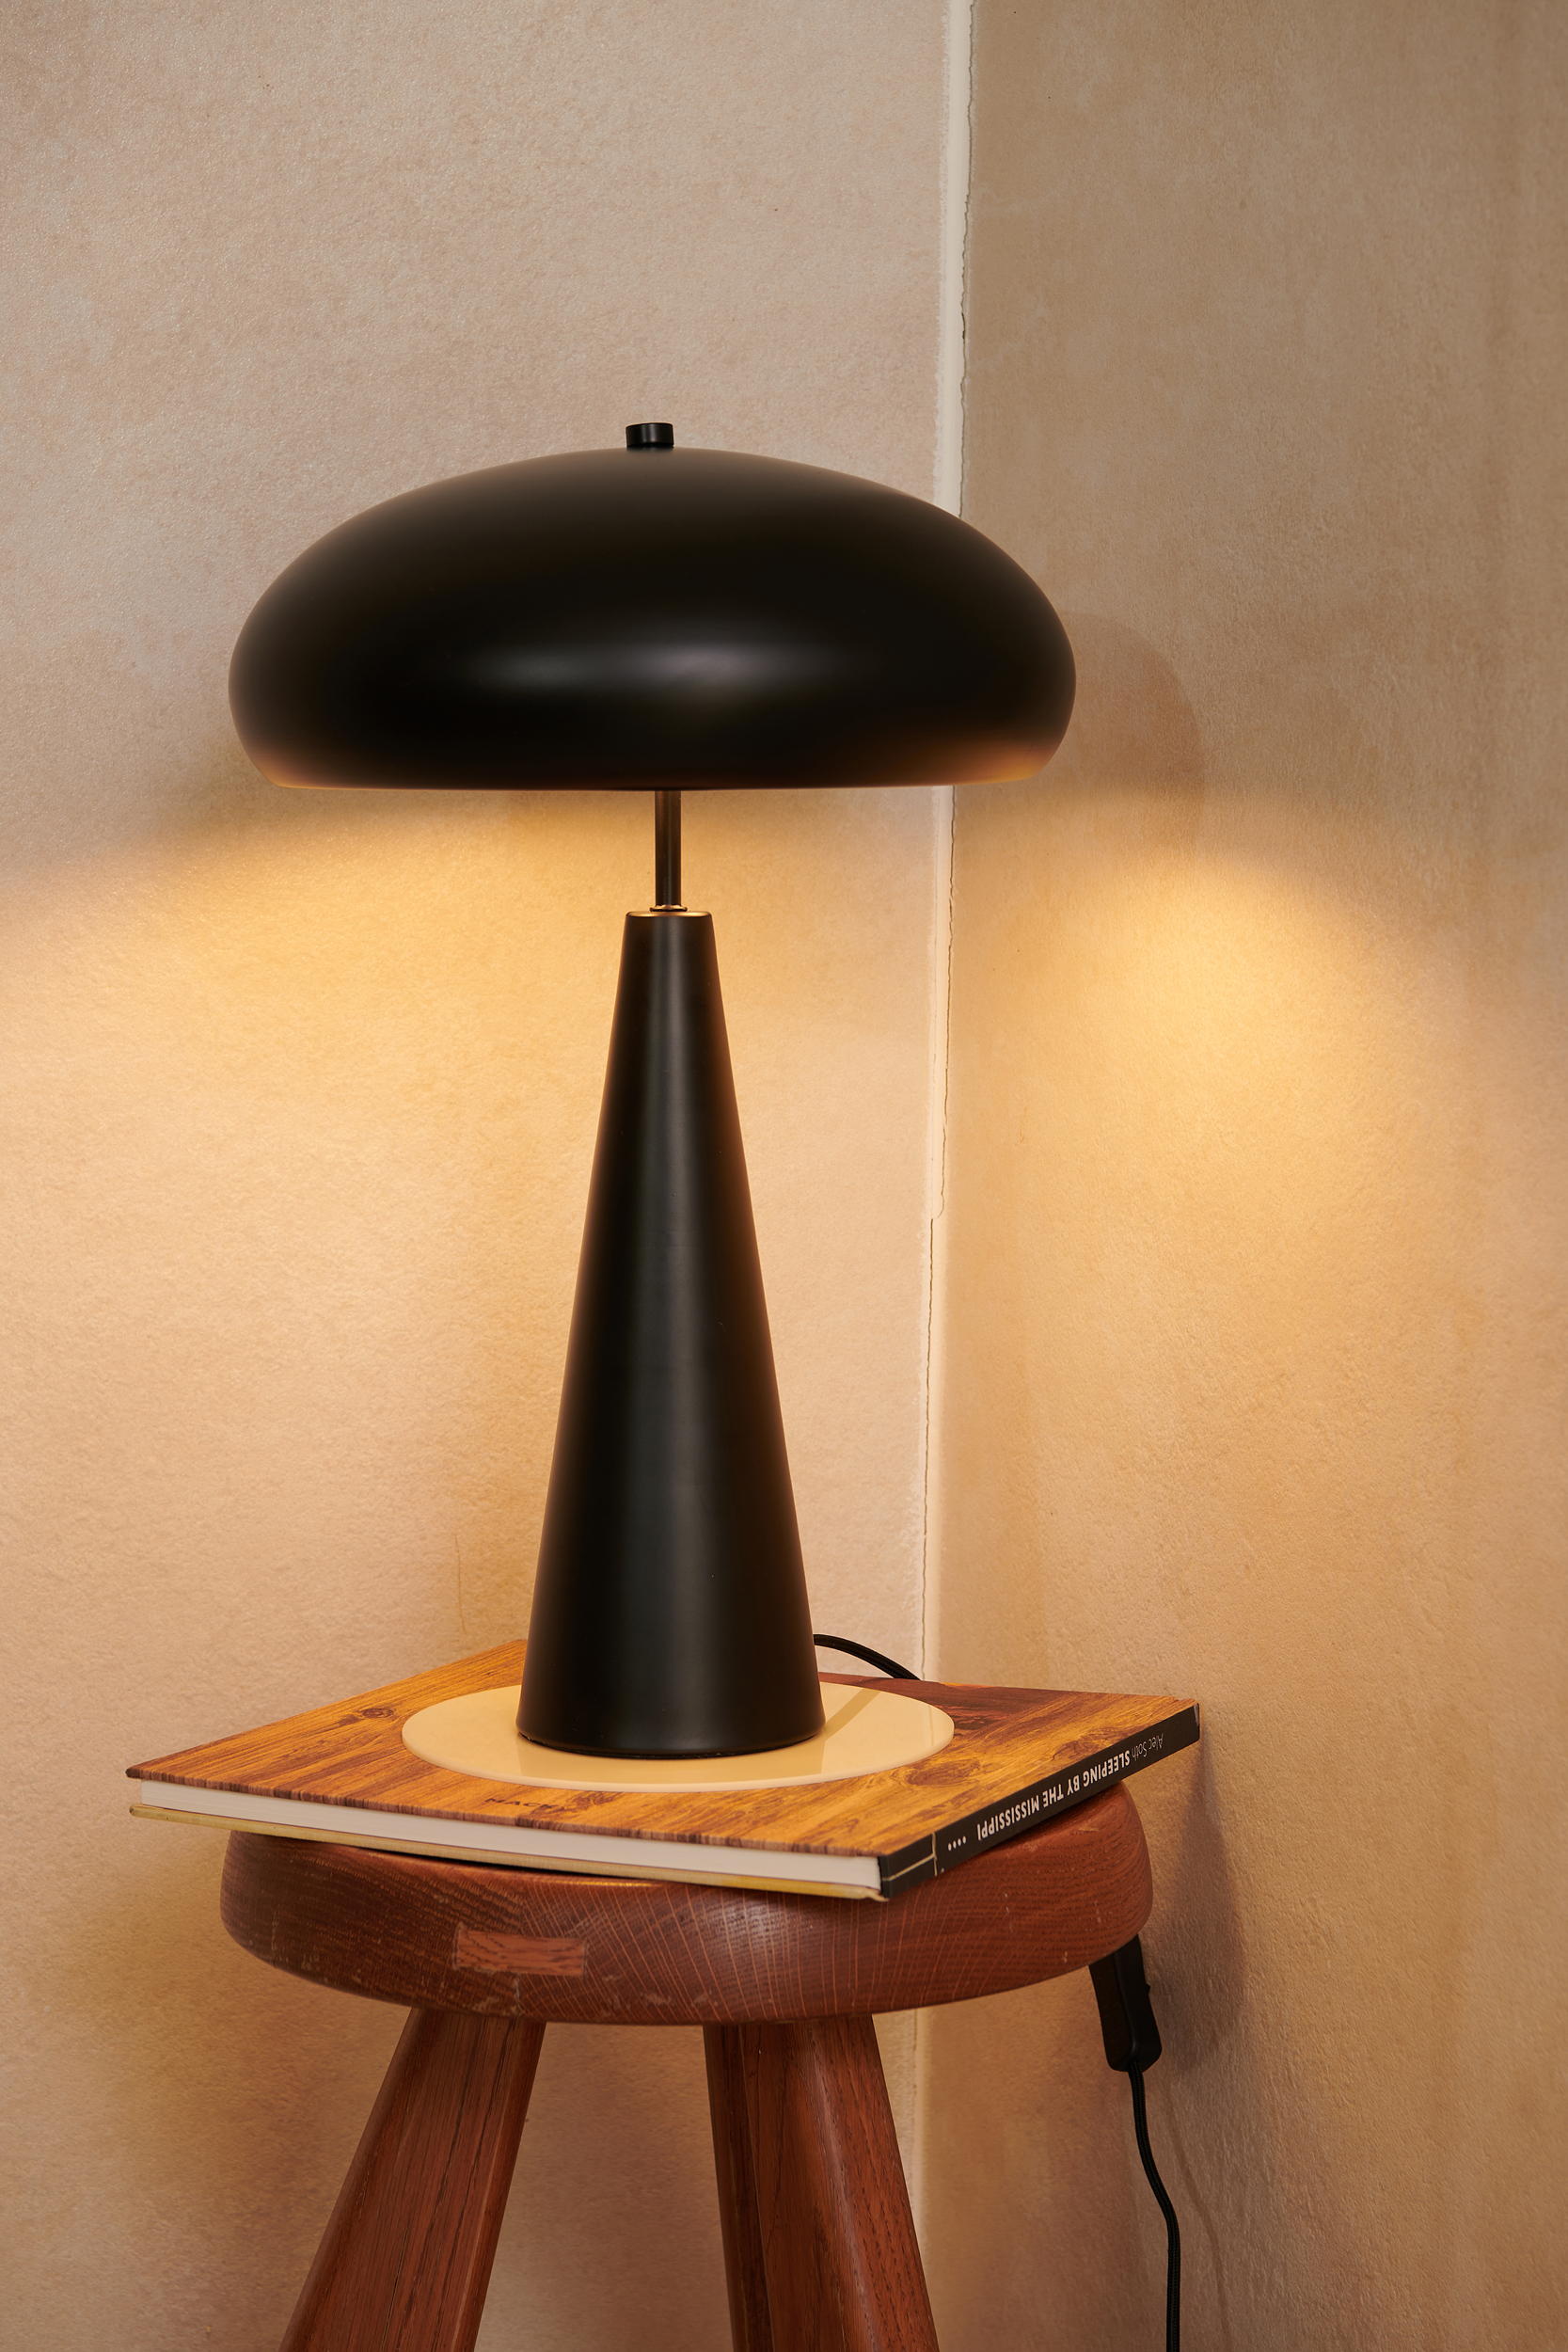 Lampe champignon vintage - Bonjour Haussmann